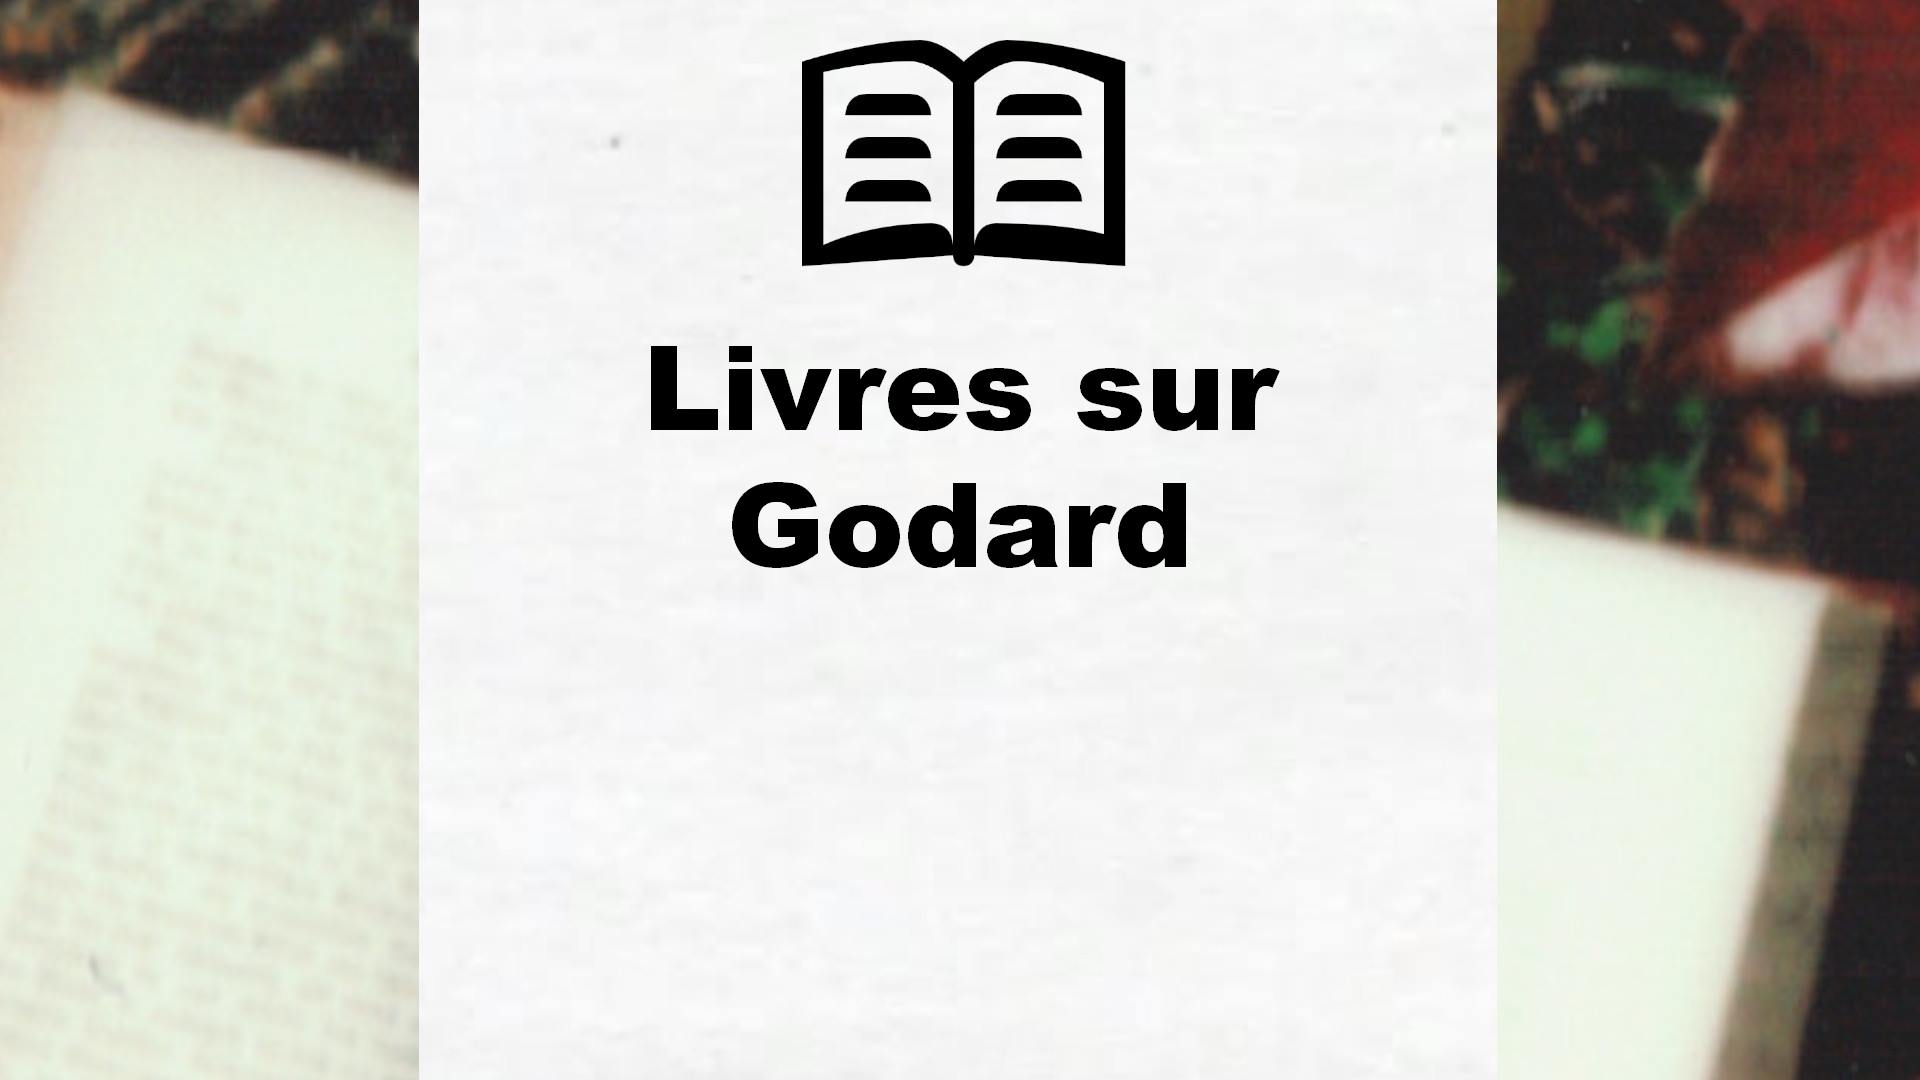 Livres sur Godard